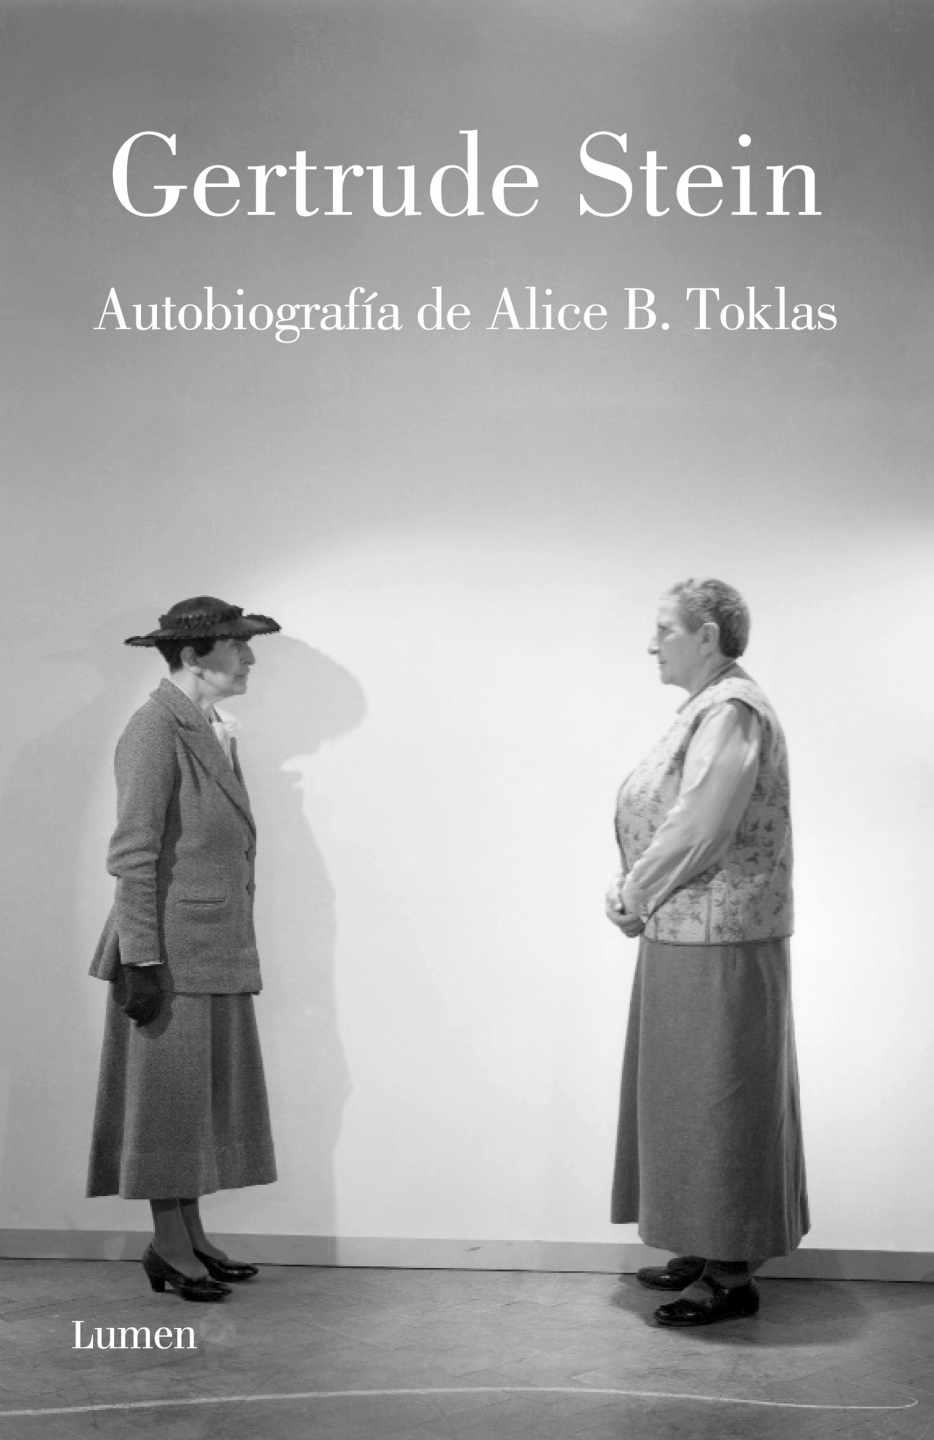 Autobiografía de Alice B. Toklas, Gerturde Stein.